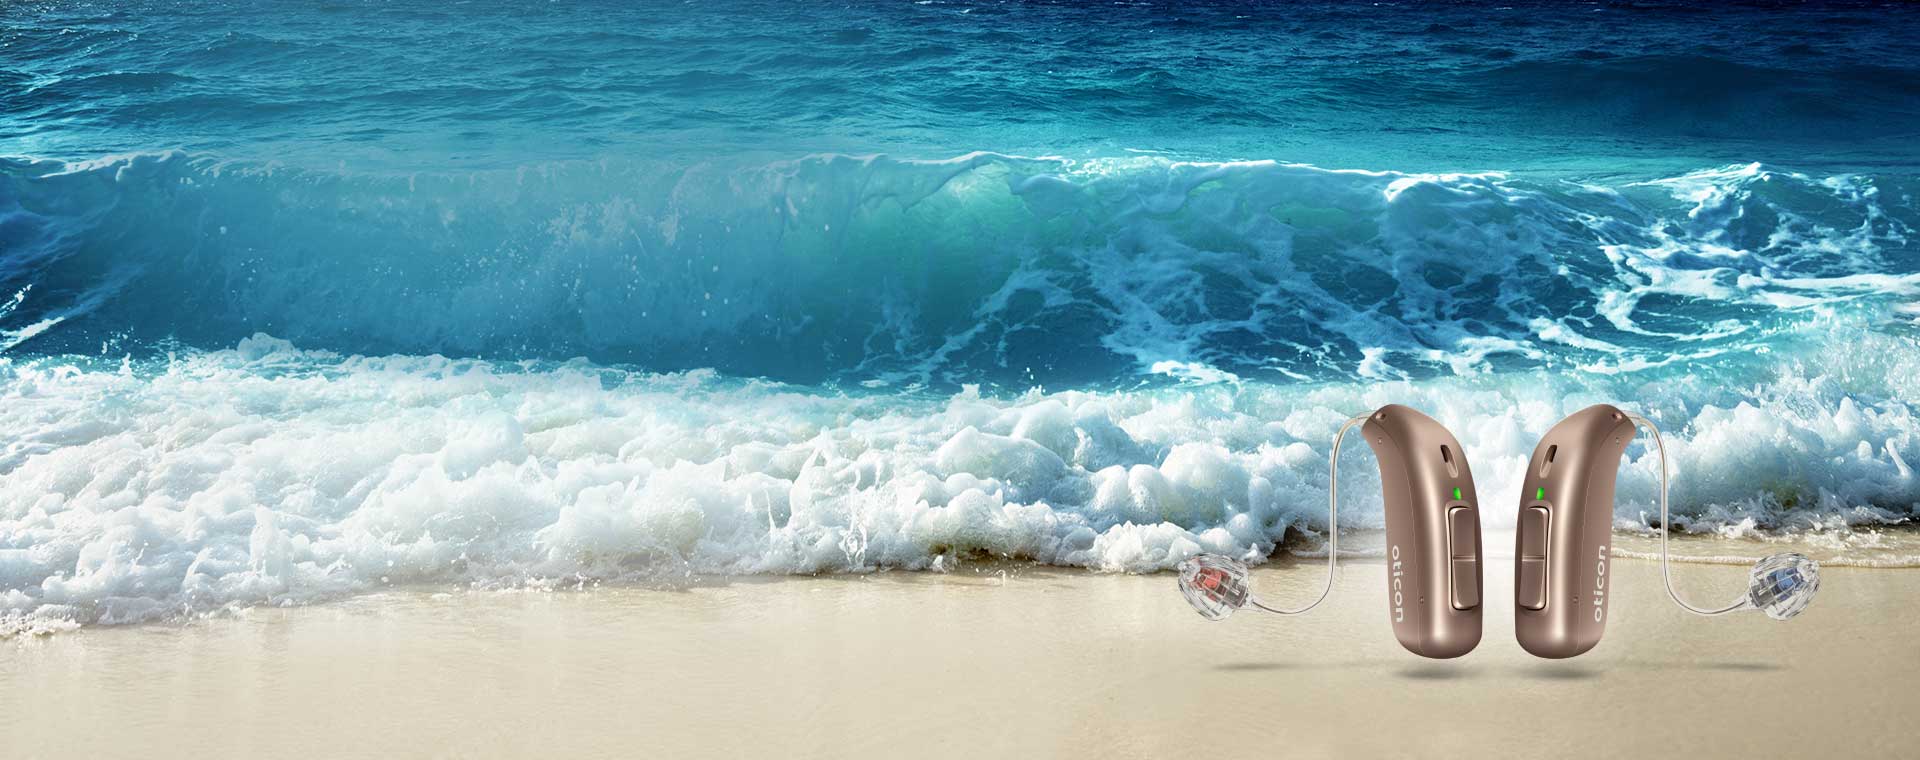 La imagen muestra dos audífonos junto al mar